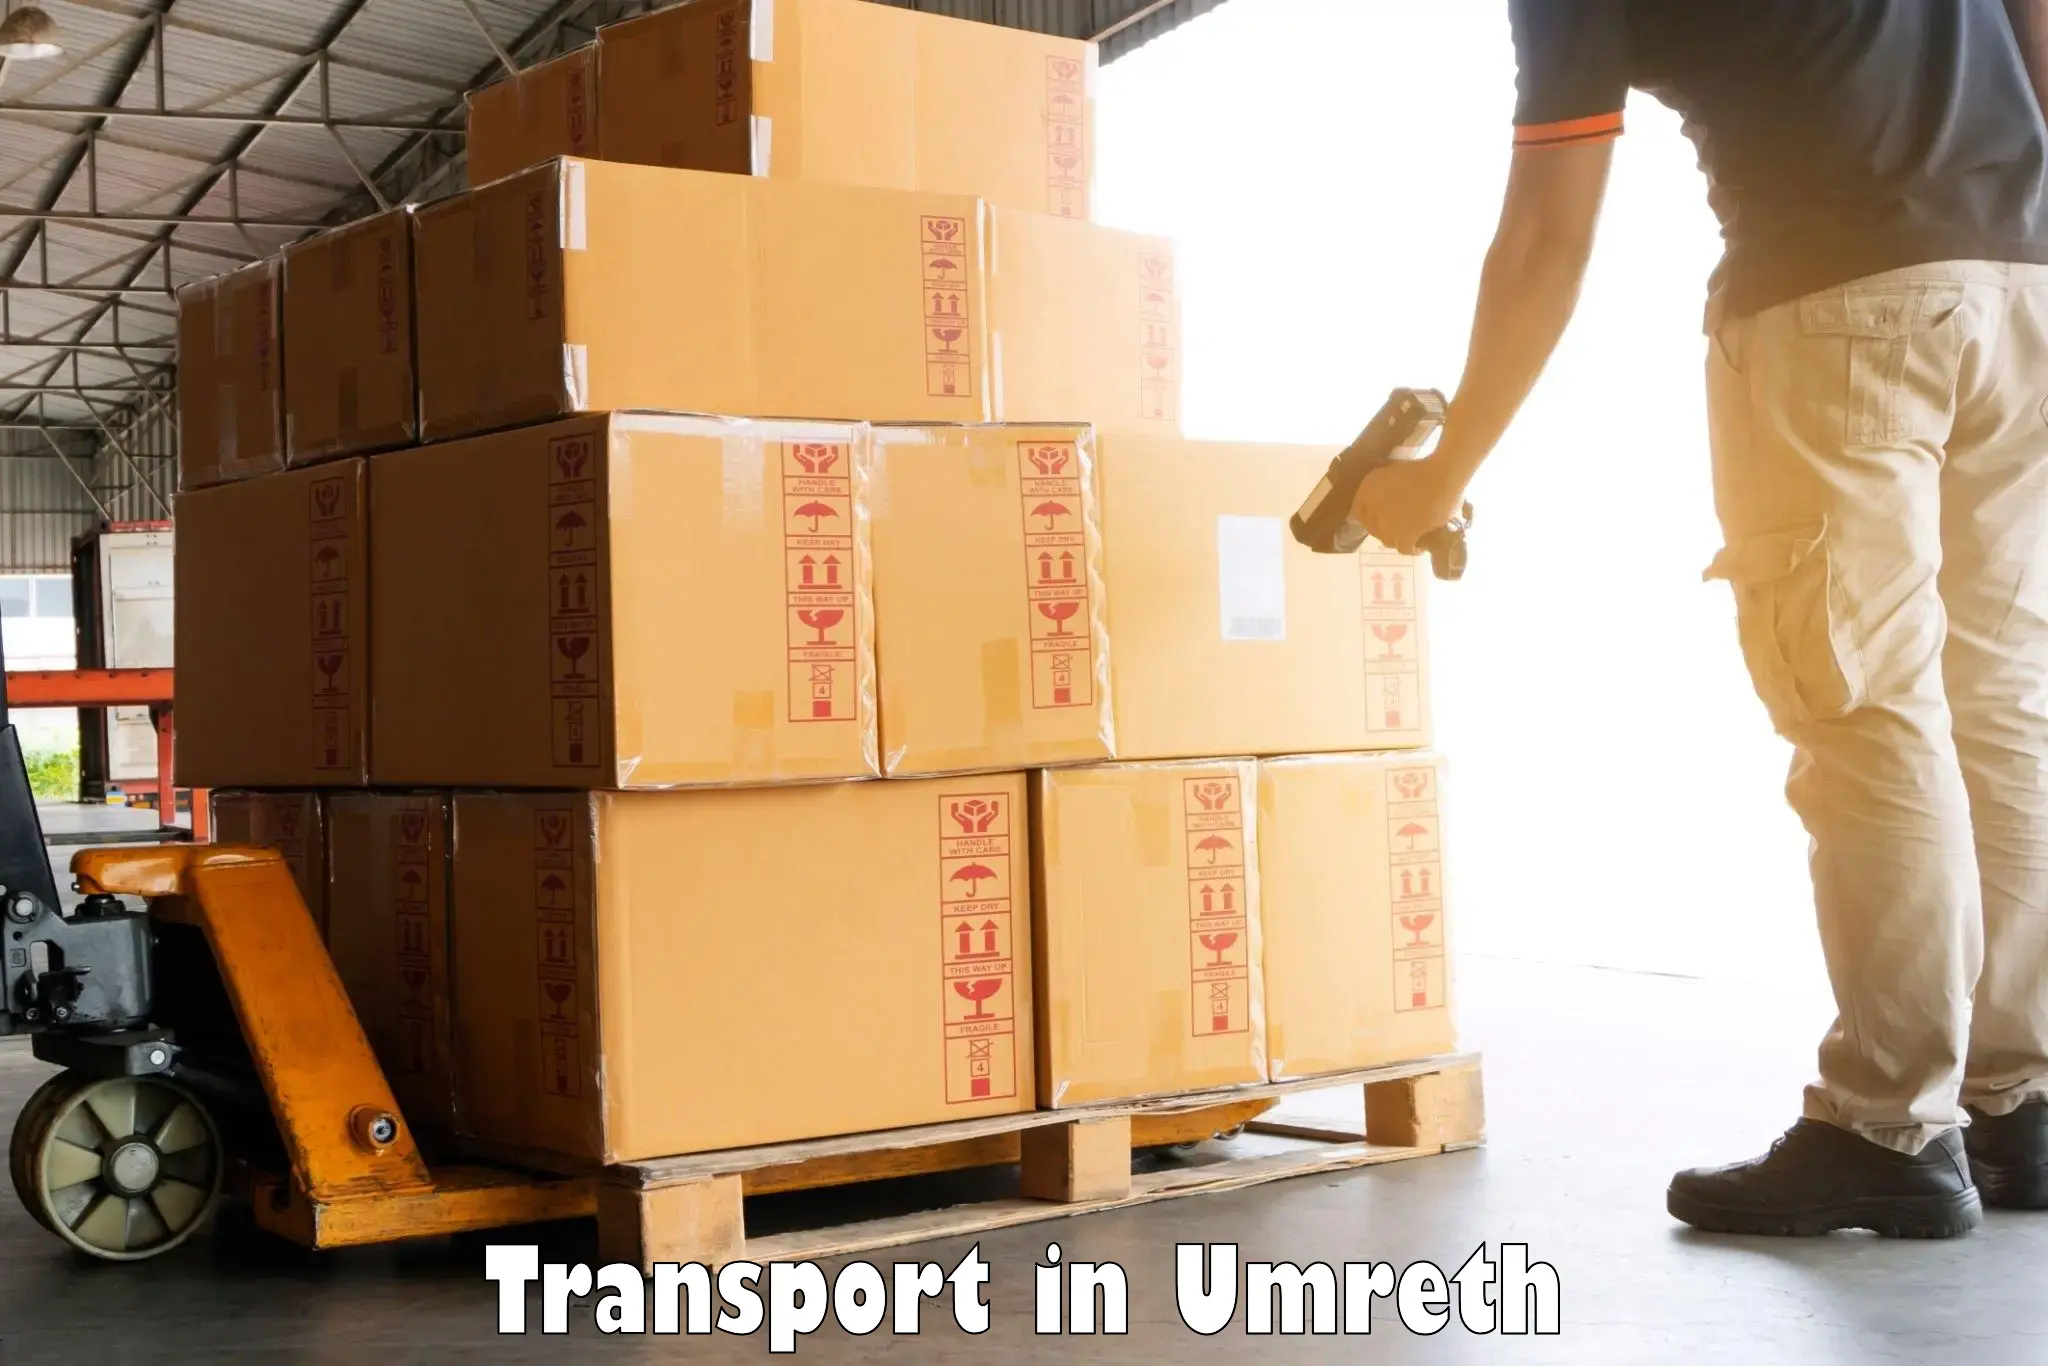 Land transport services in Umreth